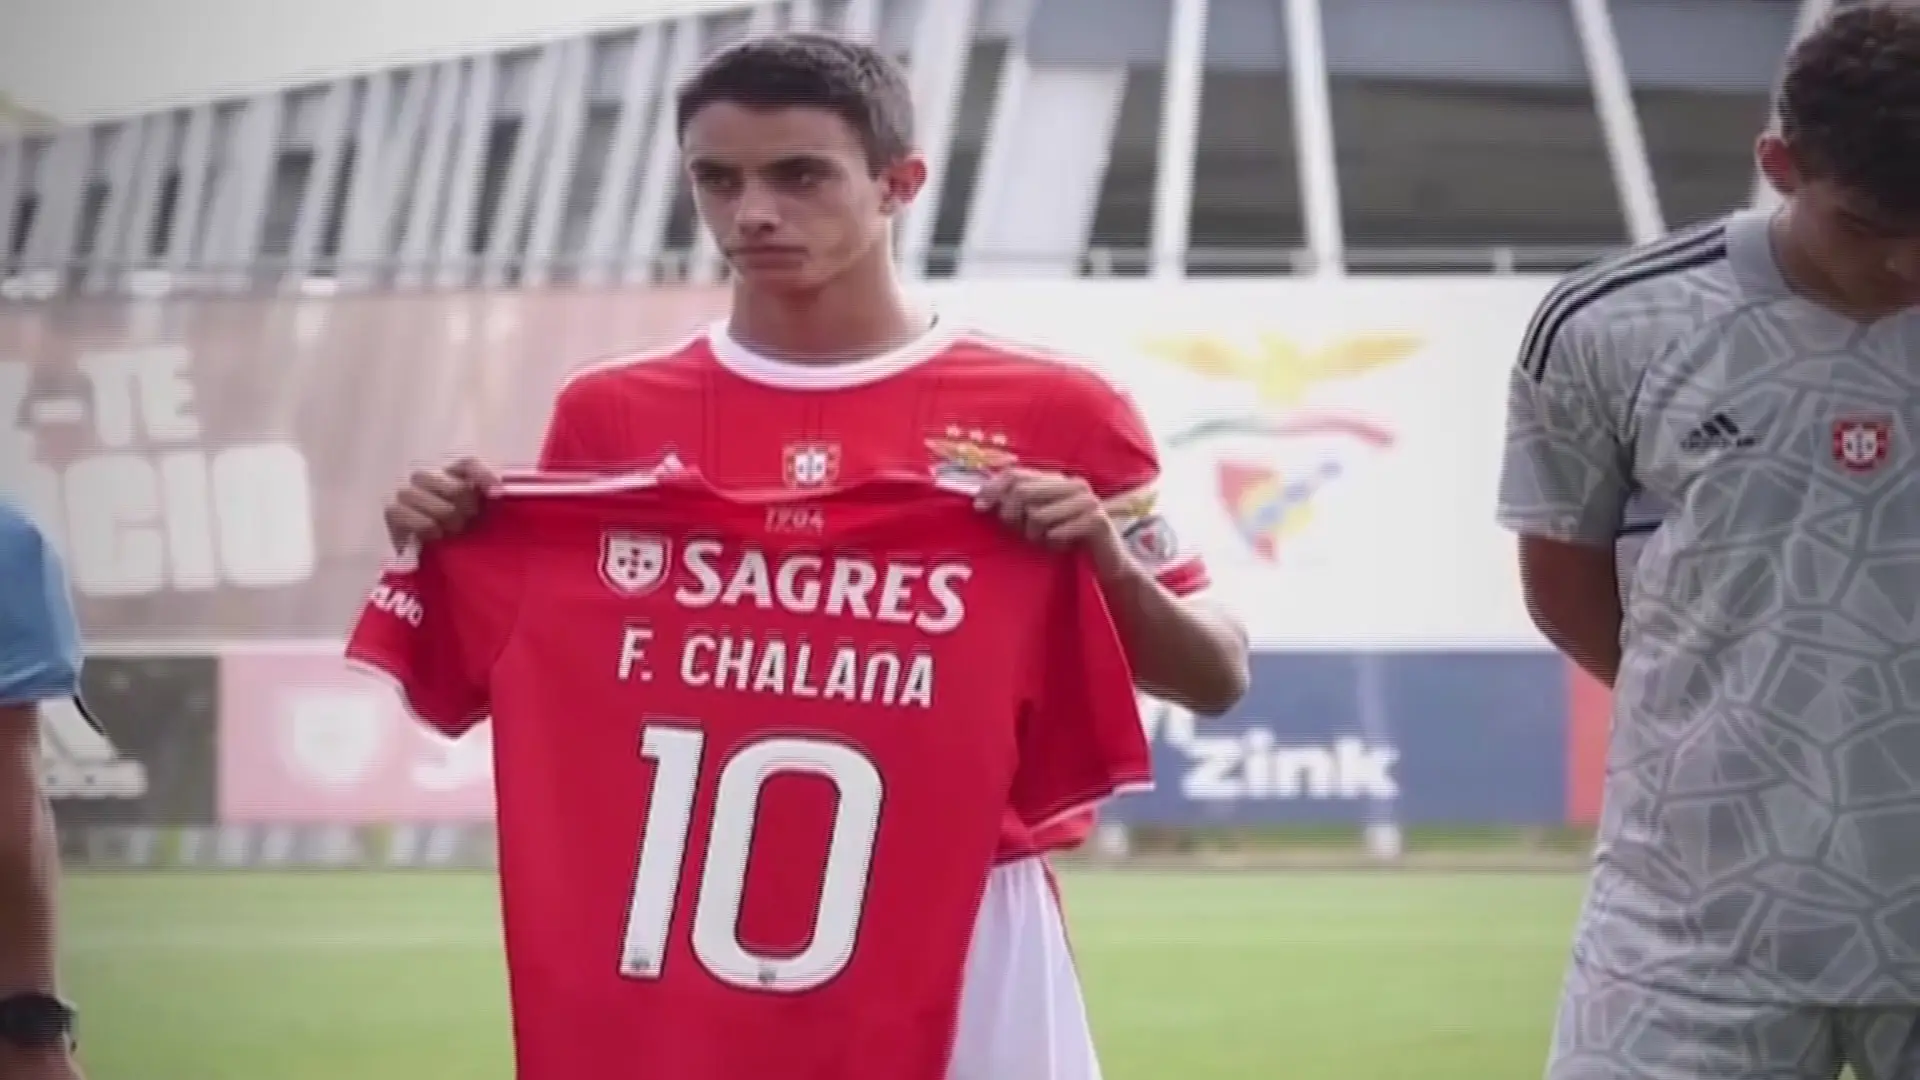 Juniores do Benfica homenageiam Chalana no Seixal